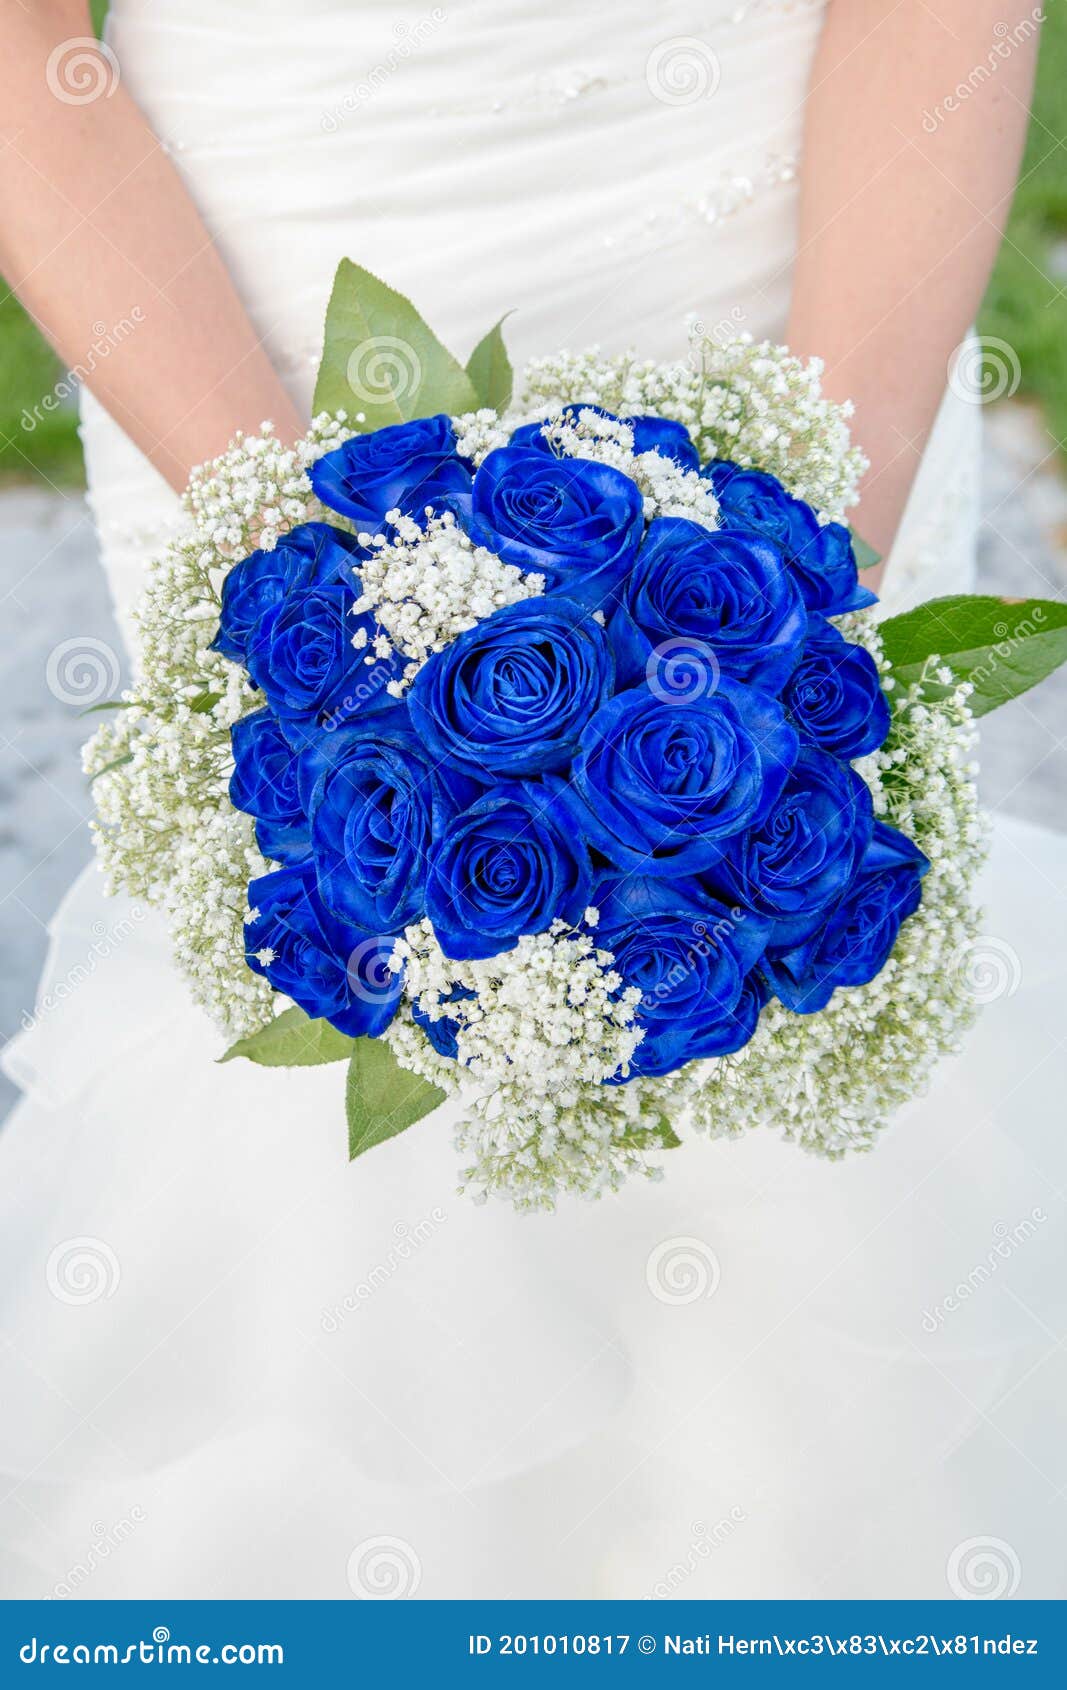 Buquê Elegante De Rosas Azuis Nas Mãos De Uma Noiva. Imagem de Stock -  Imagem de pequeno, horticultura: 201010817